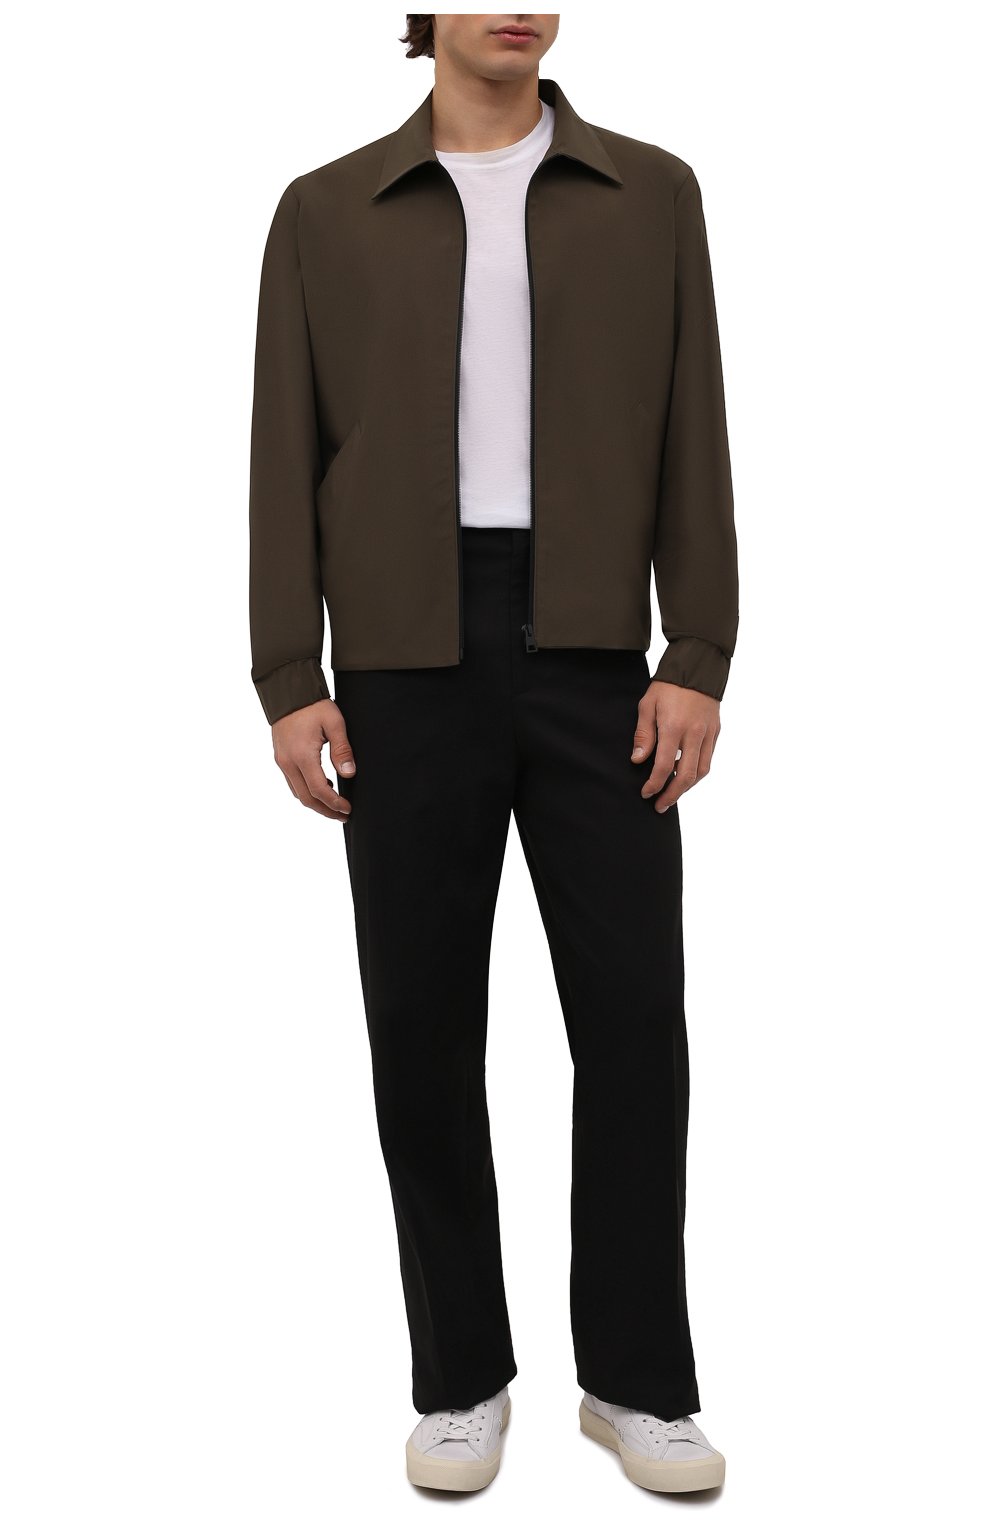 Мужская куртка HARRIS WHARF LONDON хаки цвета, арт. C9341PYZ | Фото 2 (Кросс-КТ: Куртка, Ветровка; Рукава: Длинные; Материал внешний: Синтетический материал; Стили: Милитари, Кэжуэл; Длина (верхняя одежда): Короткие)